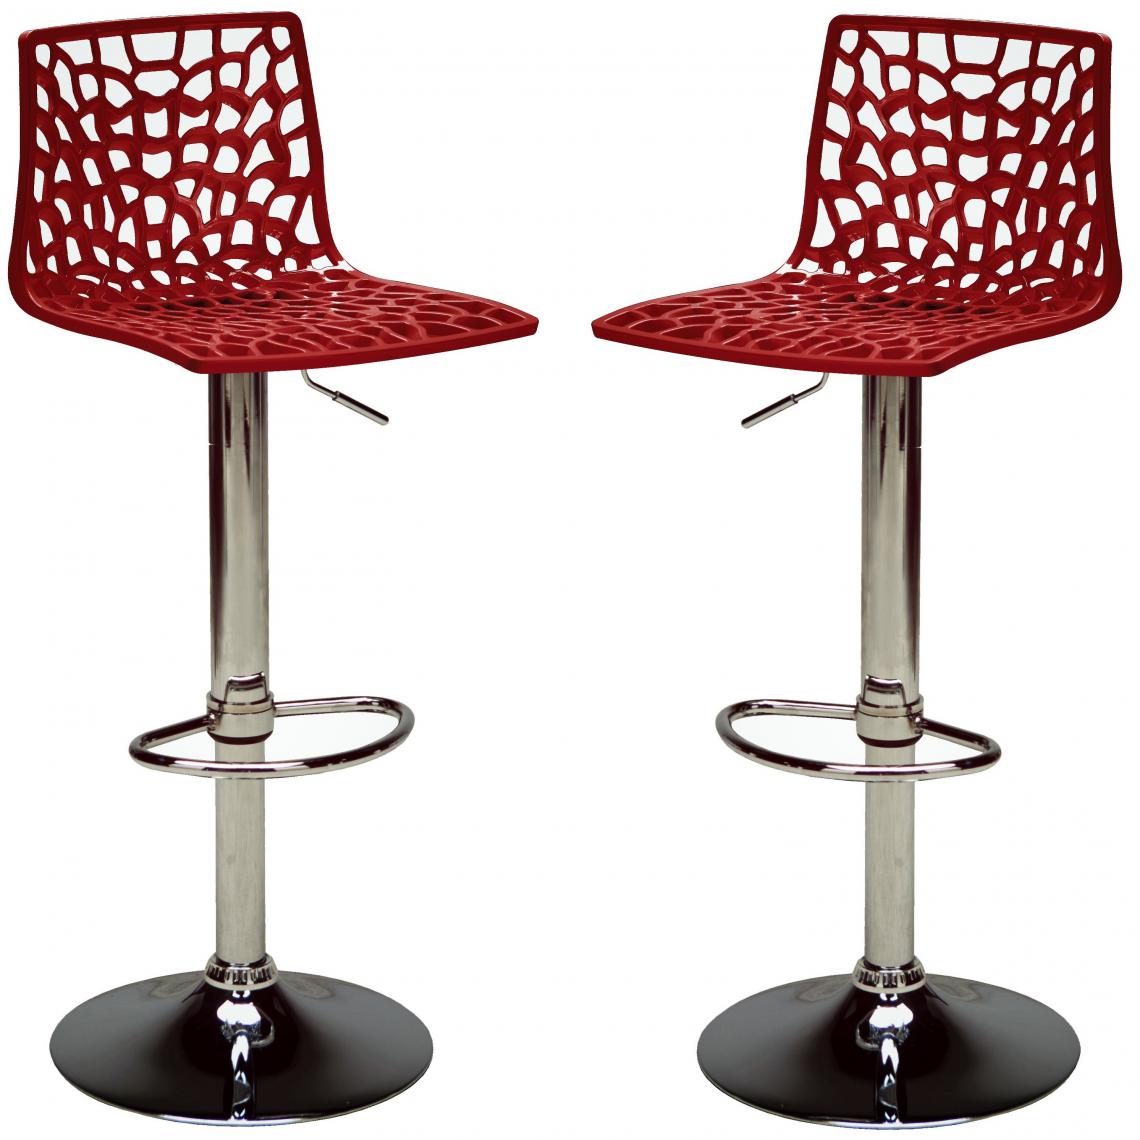 3S. x Home - Lot de 2 Chaises de Bar Modernes Ajustables SPARTE - Chaises